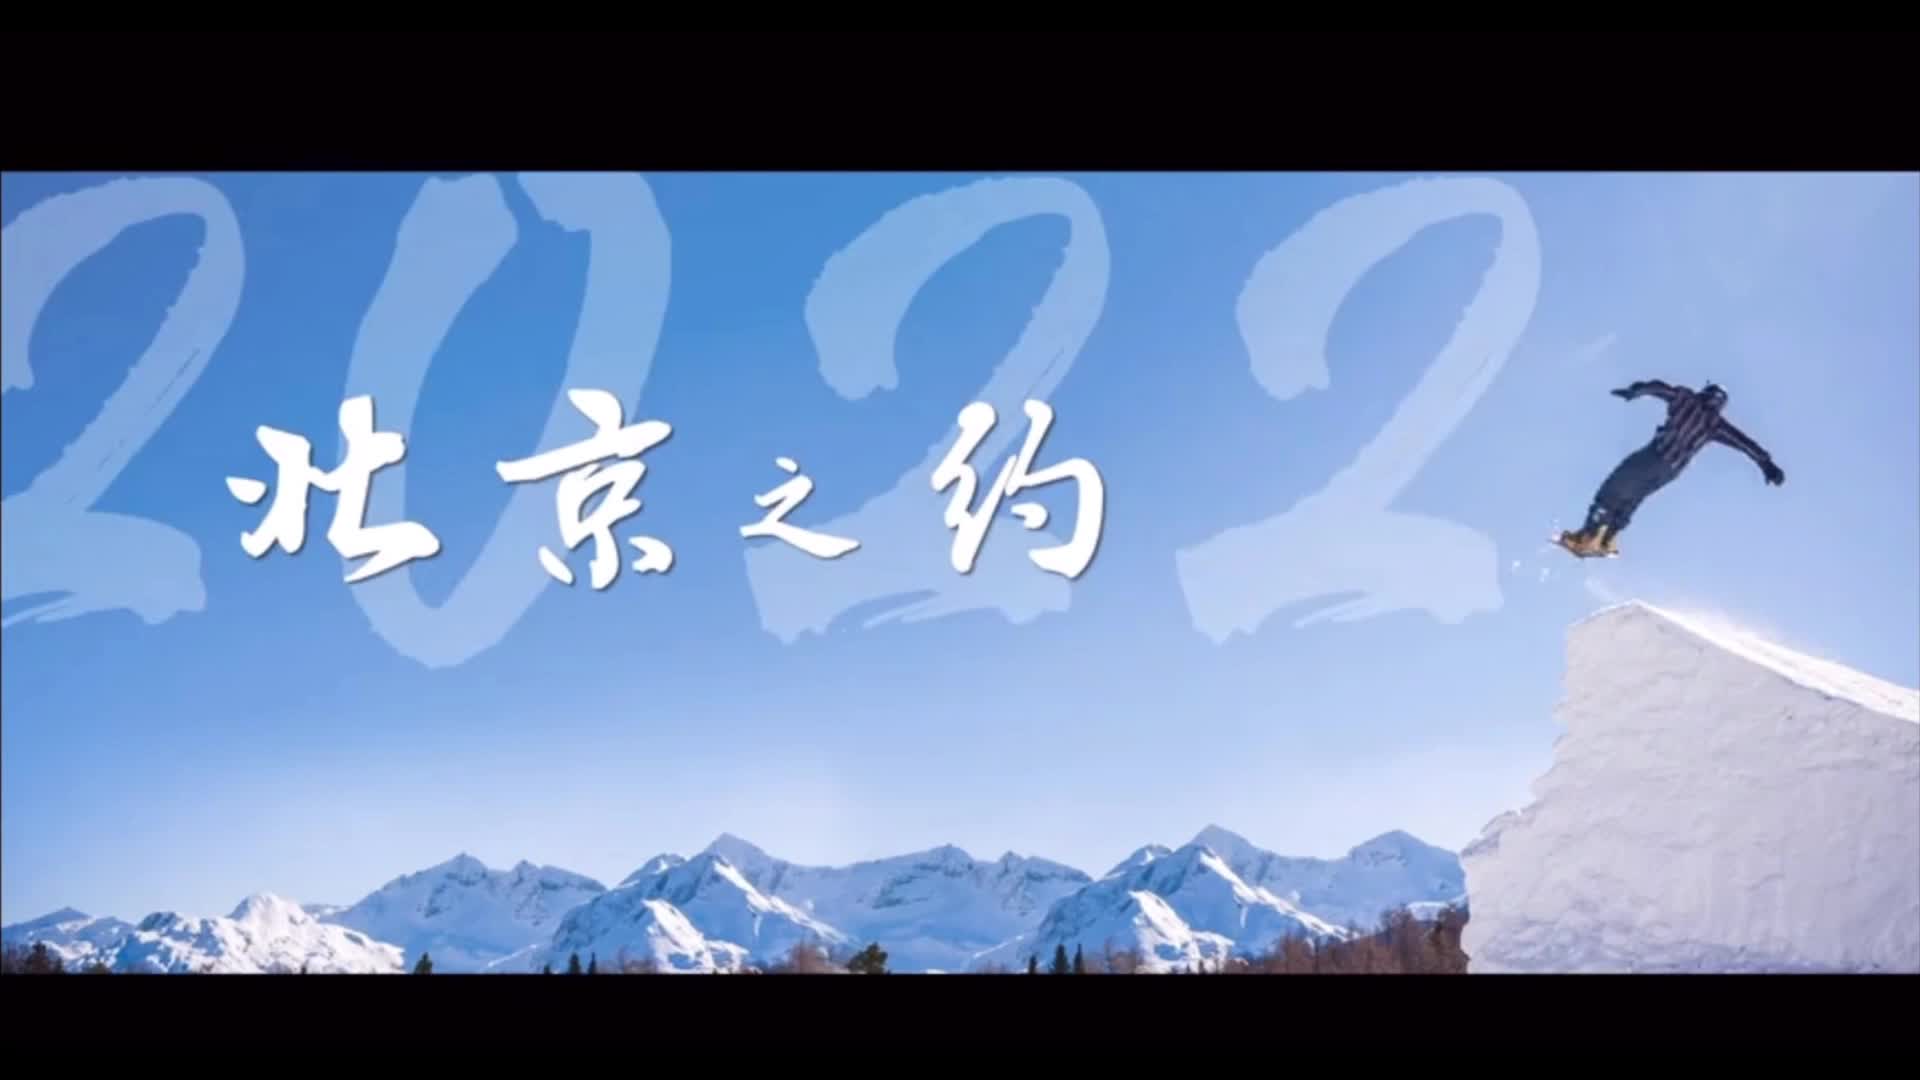 相约北京冬奥系列视频二十三中荷民众携手同心助力冬奥